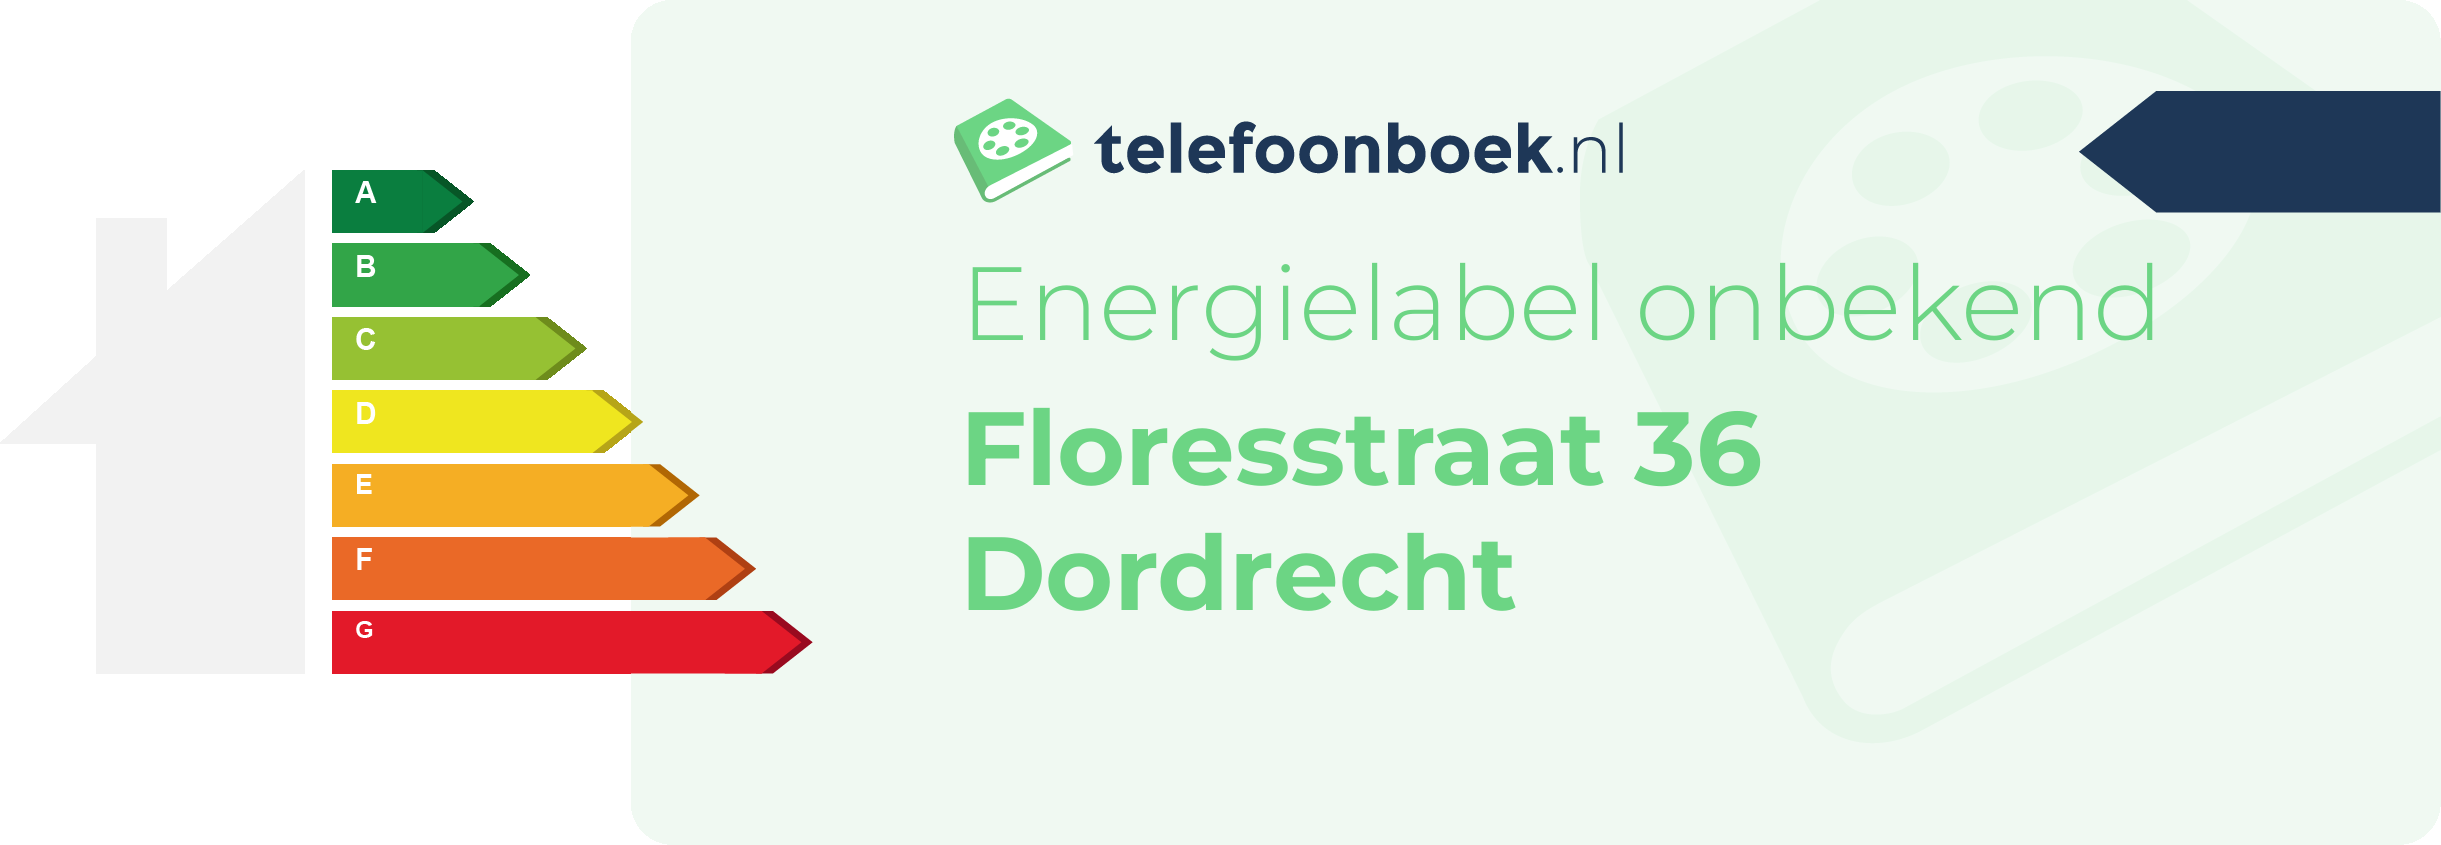 Energielabel Floresstraat 36 Dordrecht